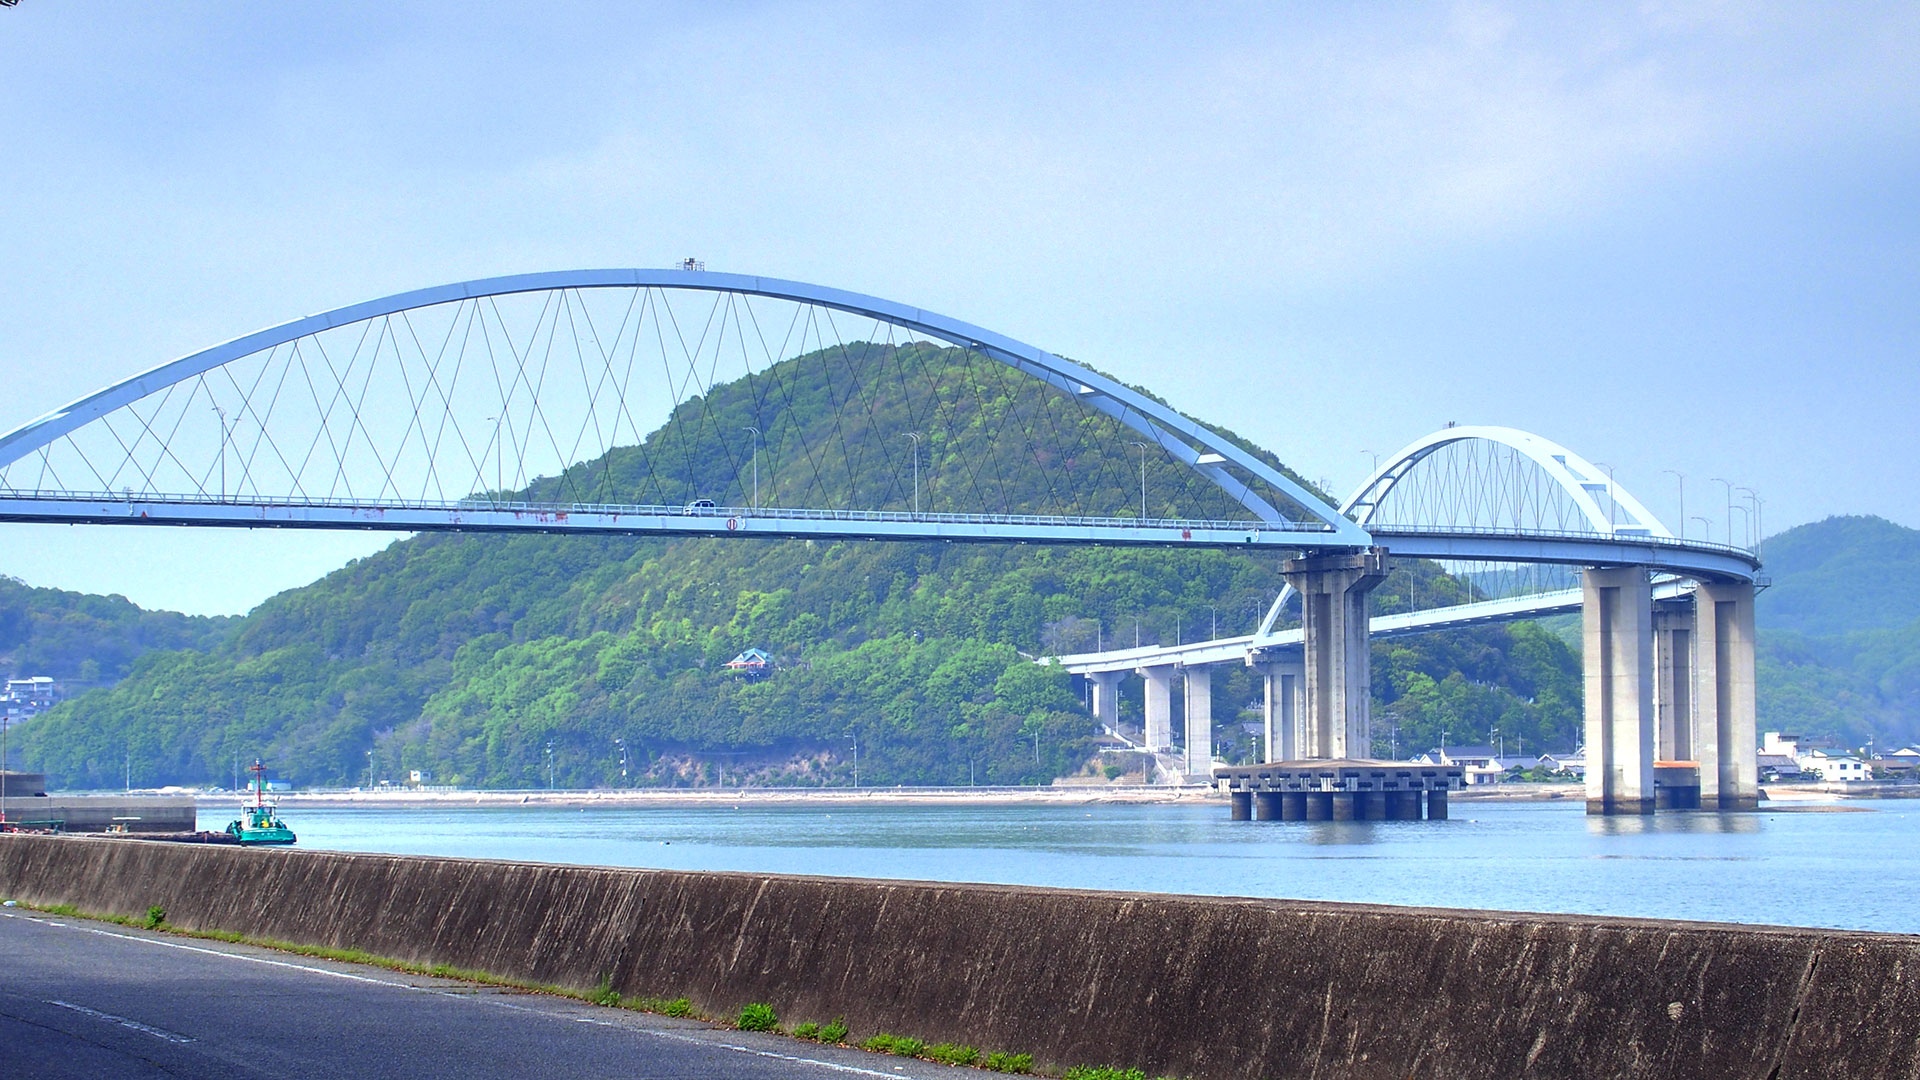 内海大橋は、沼隈半島の先端・沼隈町常石と内海町の田島を結ぶ橋です。1989 年 (平成元年) に完成しました。全長は832mで、「くの字」にカーブしているのが特徴です。